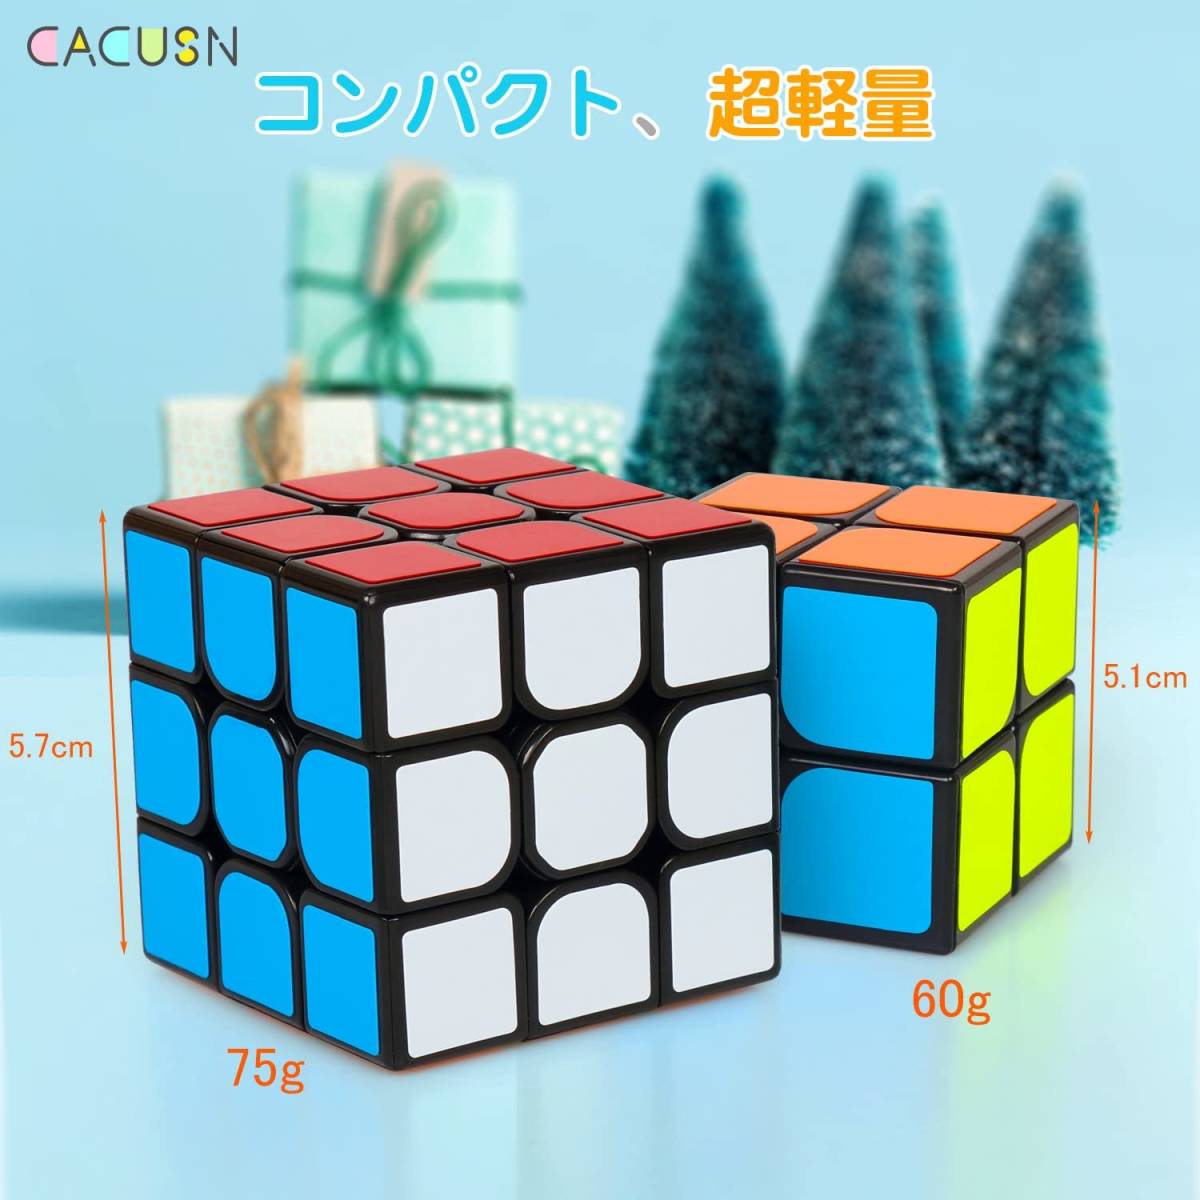 送料無料 新品 CACUSN ルービックキューブ 立体パズル 令和進化版進化型 回転スムーズ 競技用 キューブ 世界基準配色 スタンド付き 2個の画像5